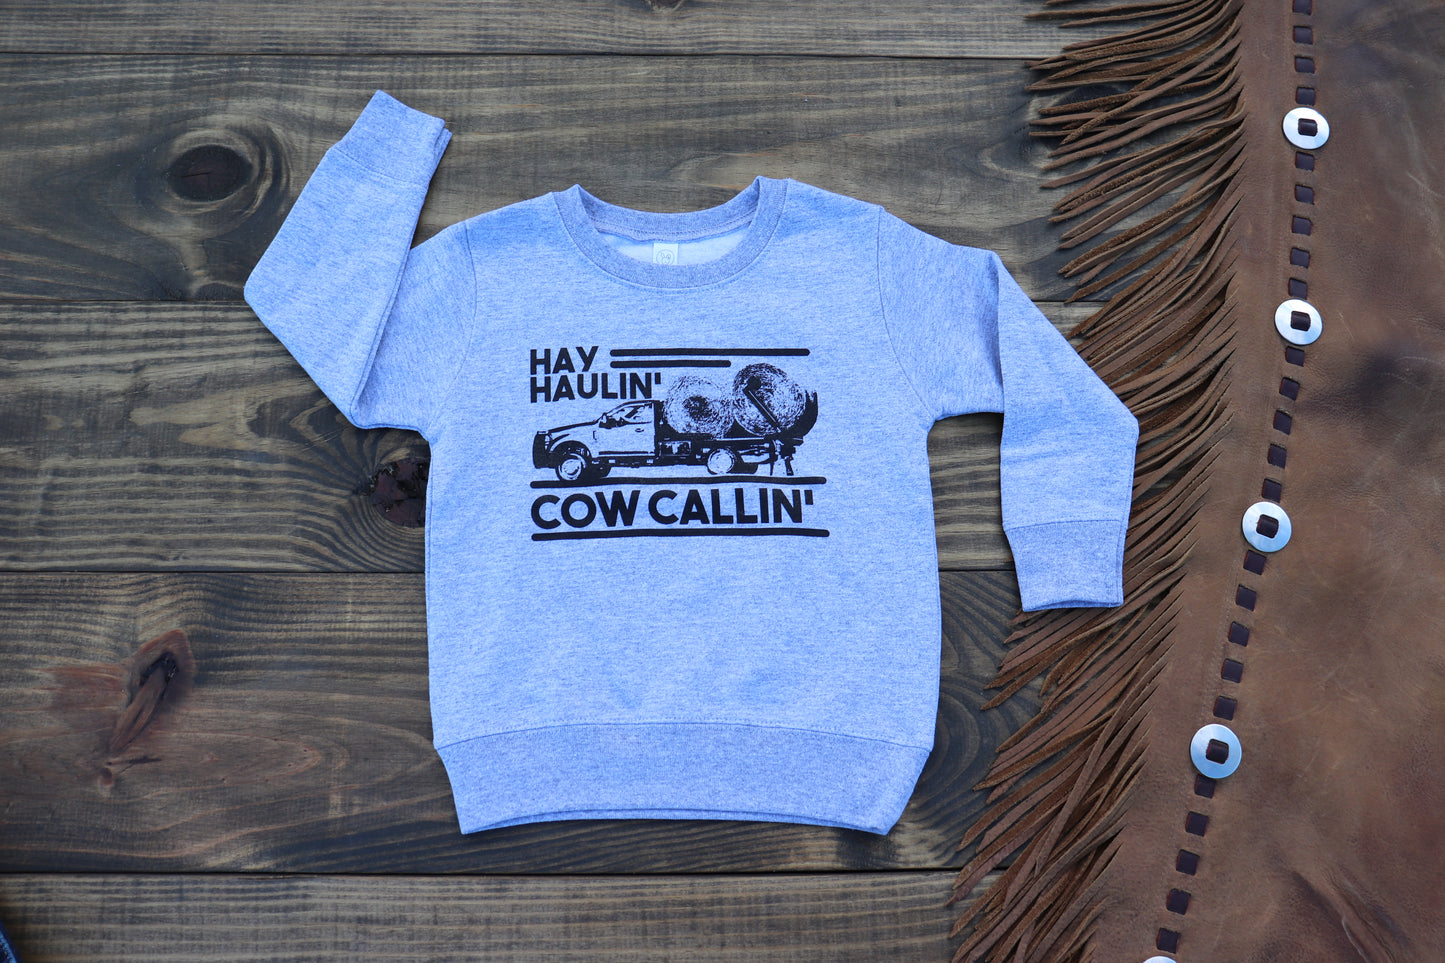 Hay Haulin' Cow Callin' Sweatshirt